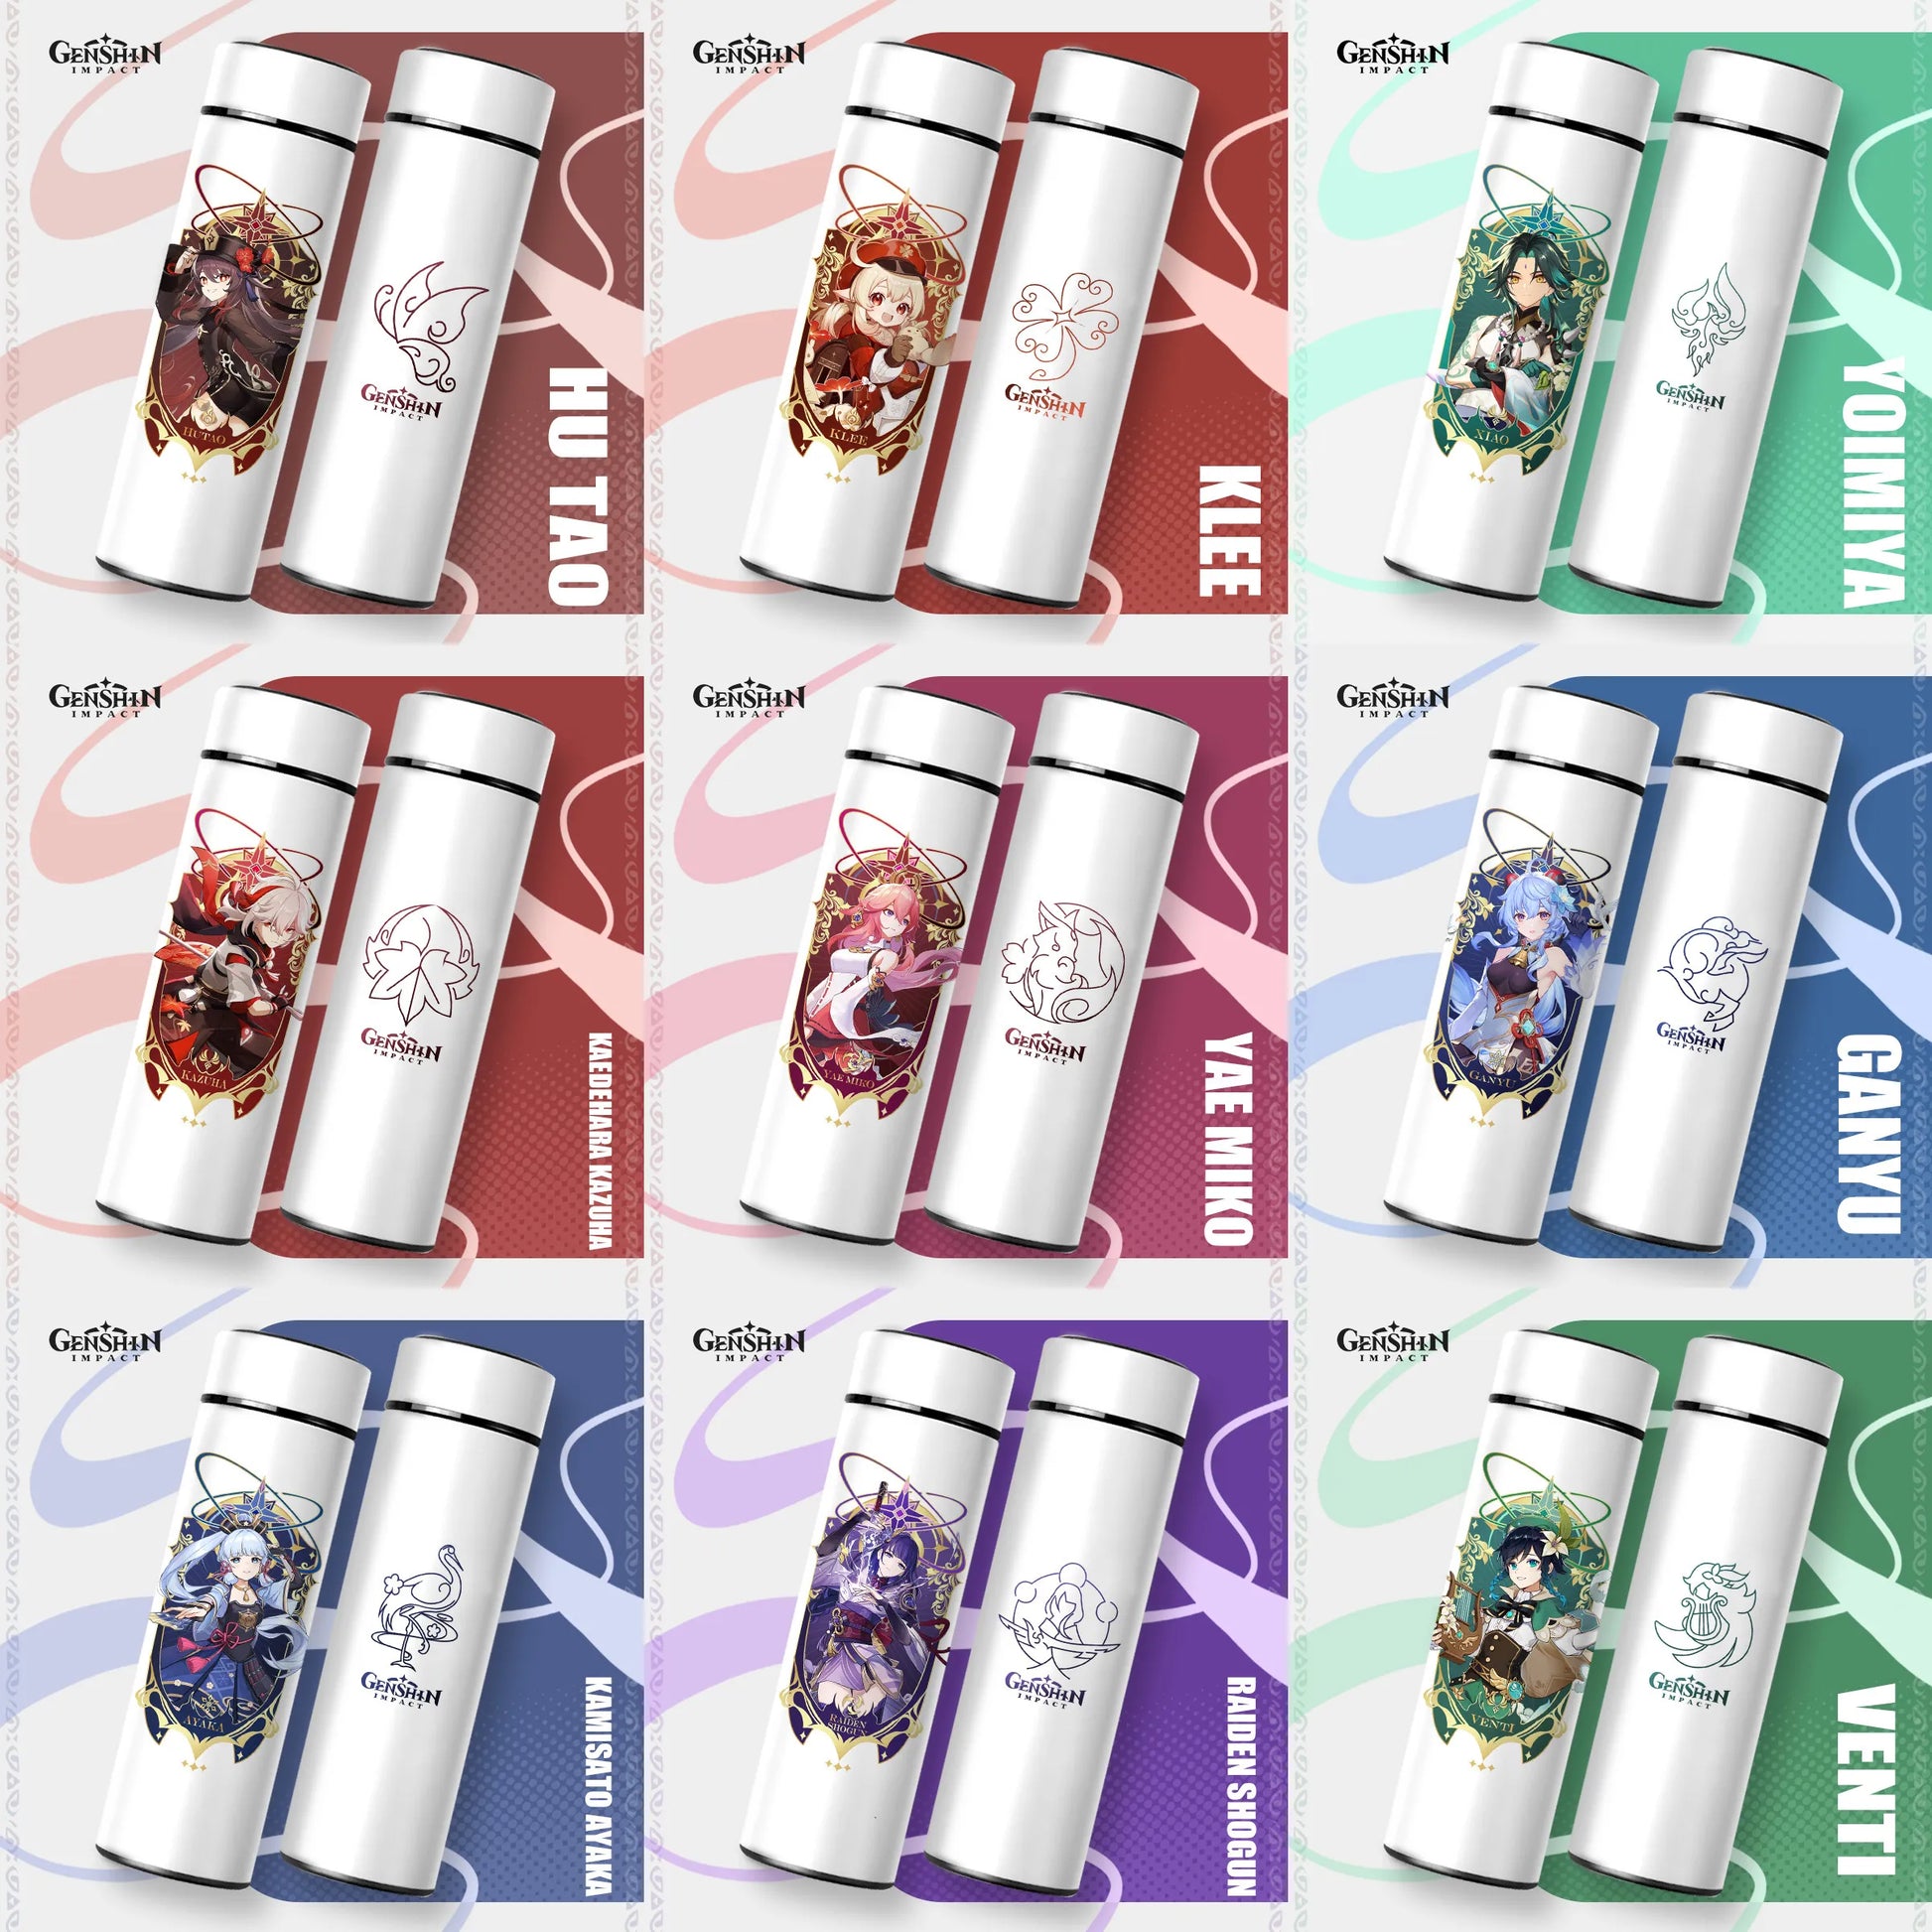 Eine Kollektion von neun weißen Thermosflaschen, jede verziert mit einem anderen Charakter und Namen aus dem Spiel "Genshin Impact", angeordnet in einem 3x3 Raster auf einem farblich hinterlegten Hintergrund.